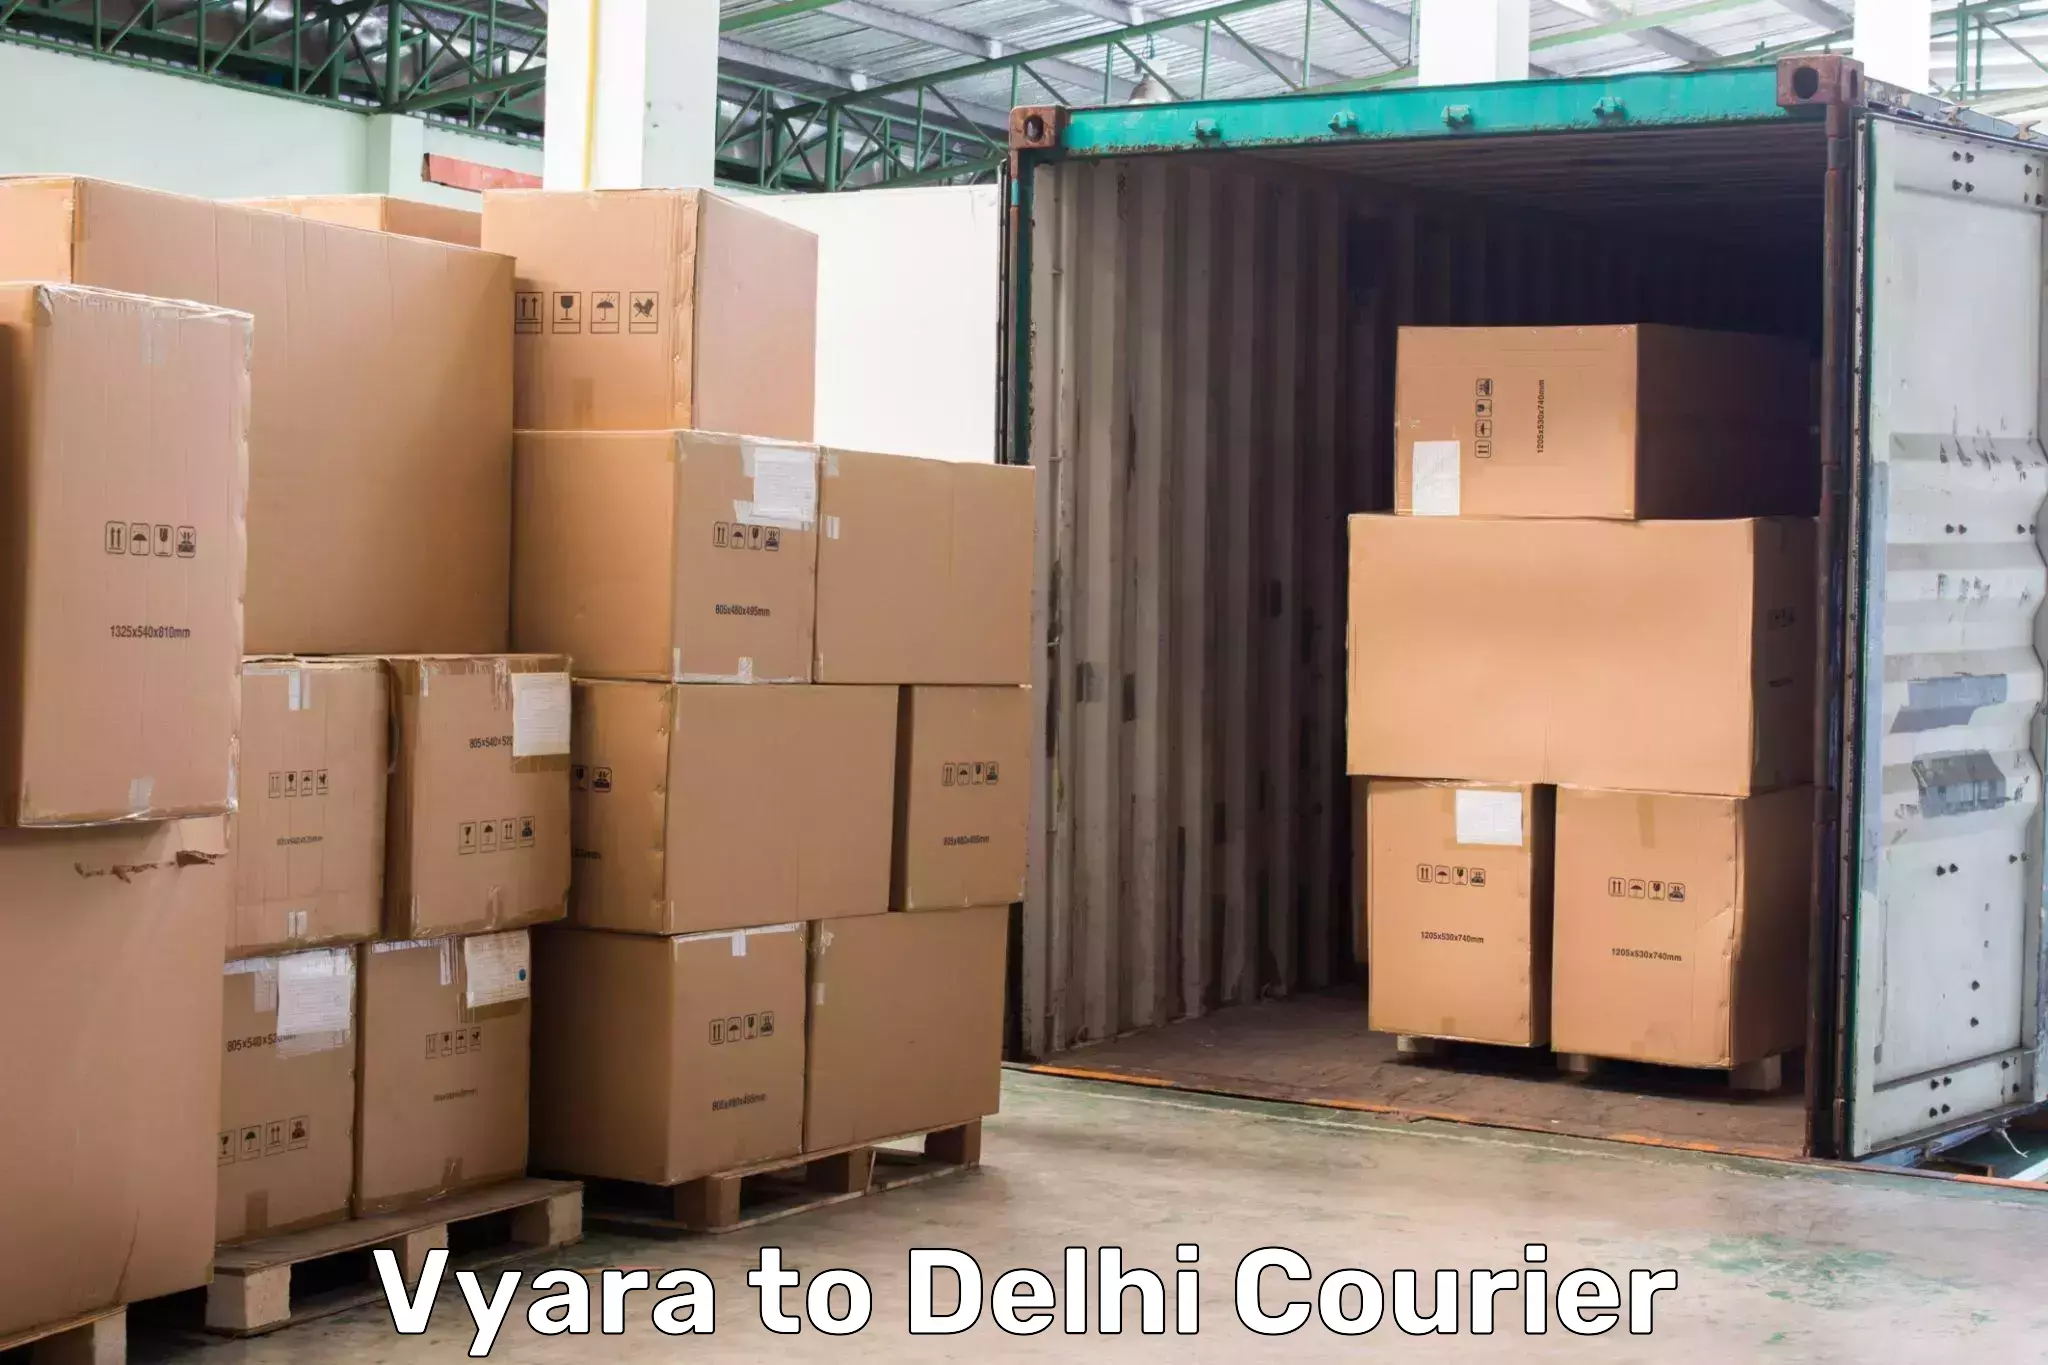 Courier service efficiency Vyara to Burari